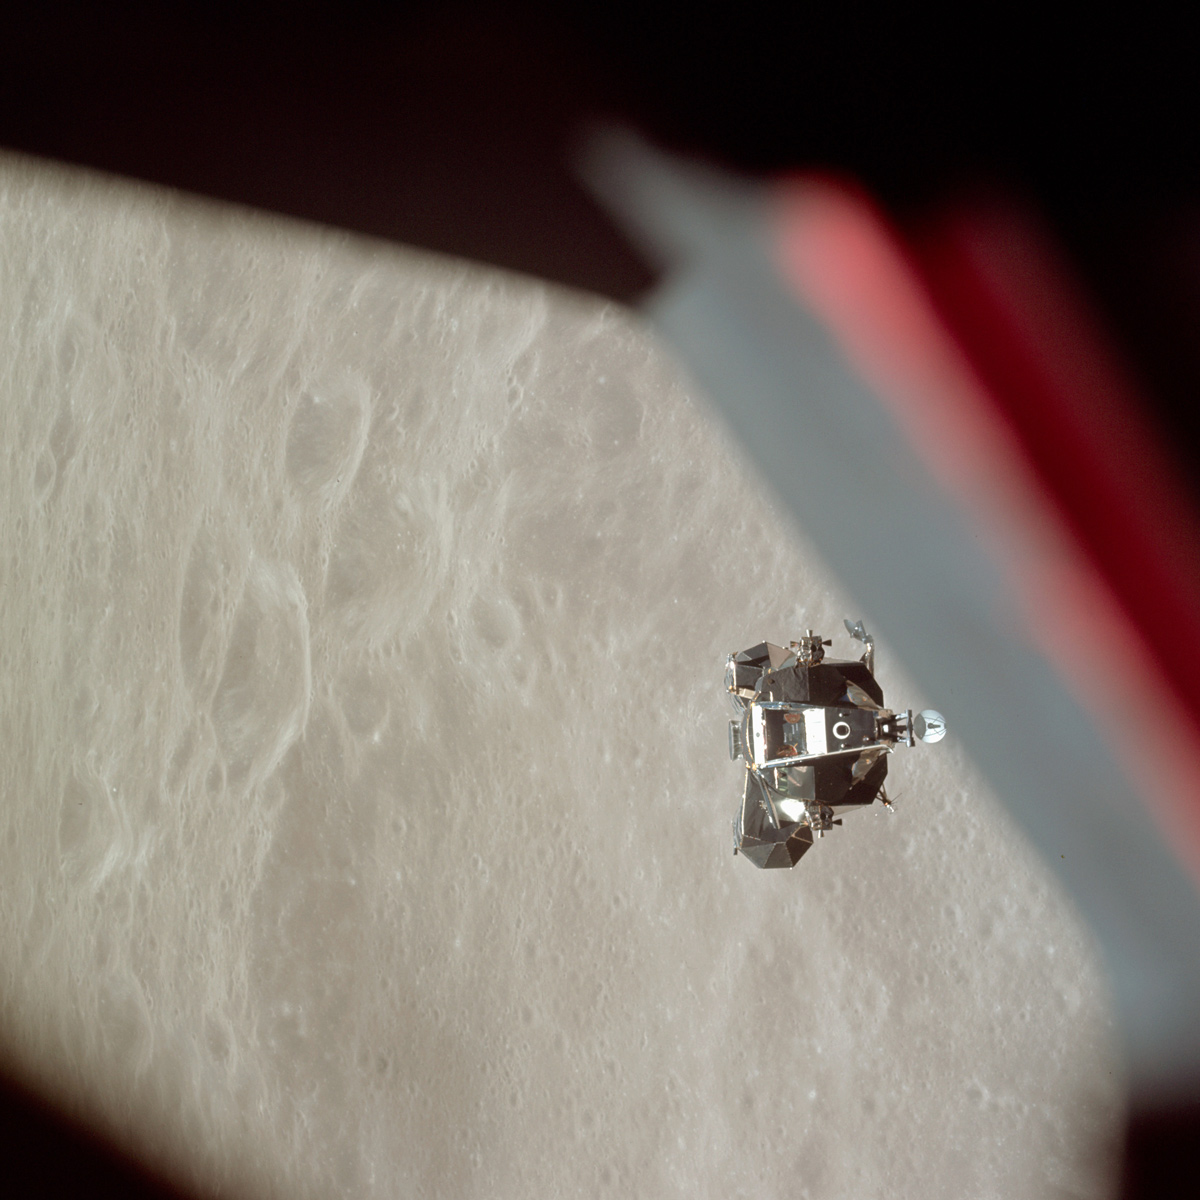 Lunar module in orbit